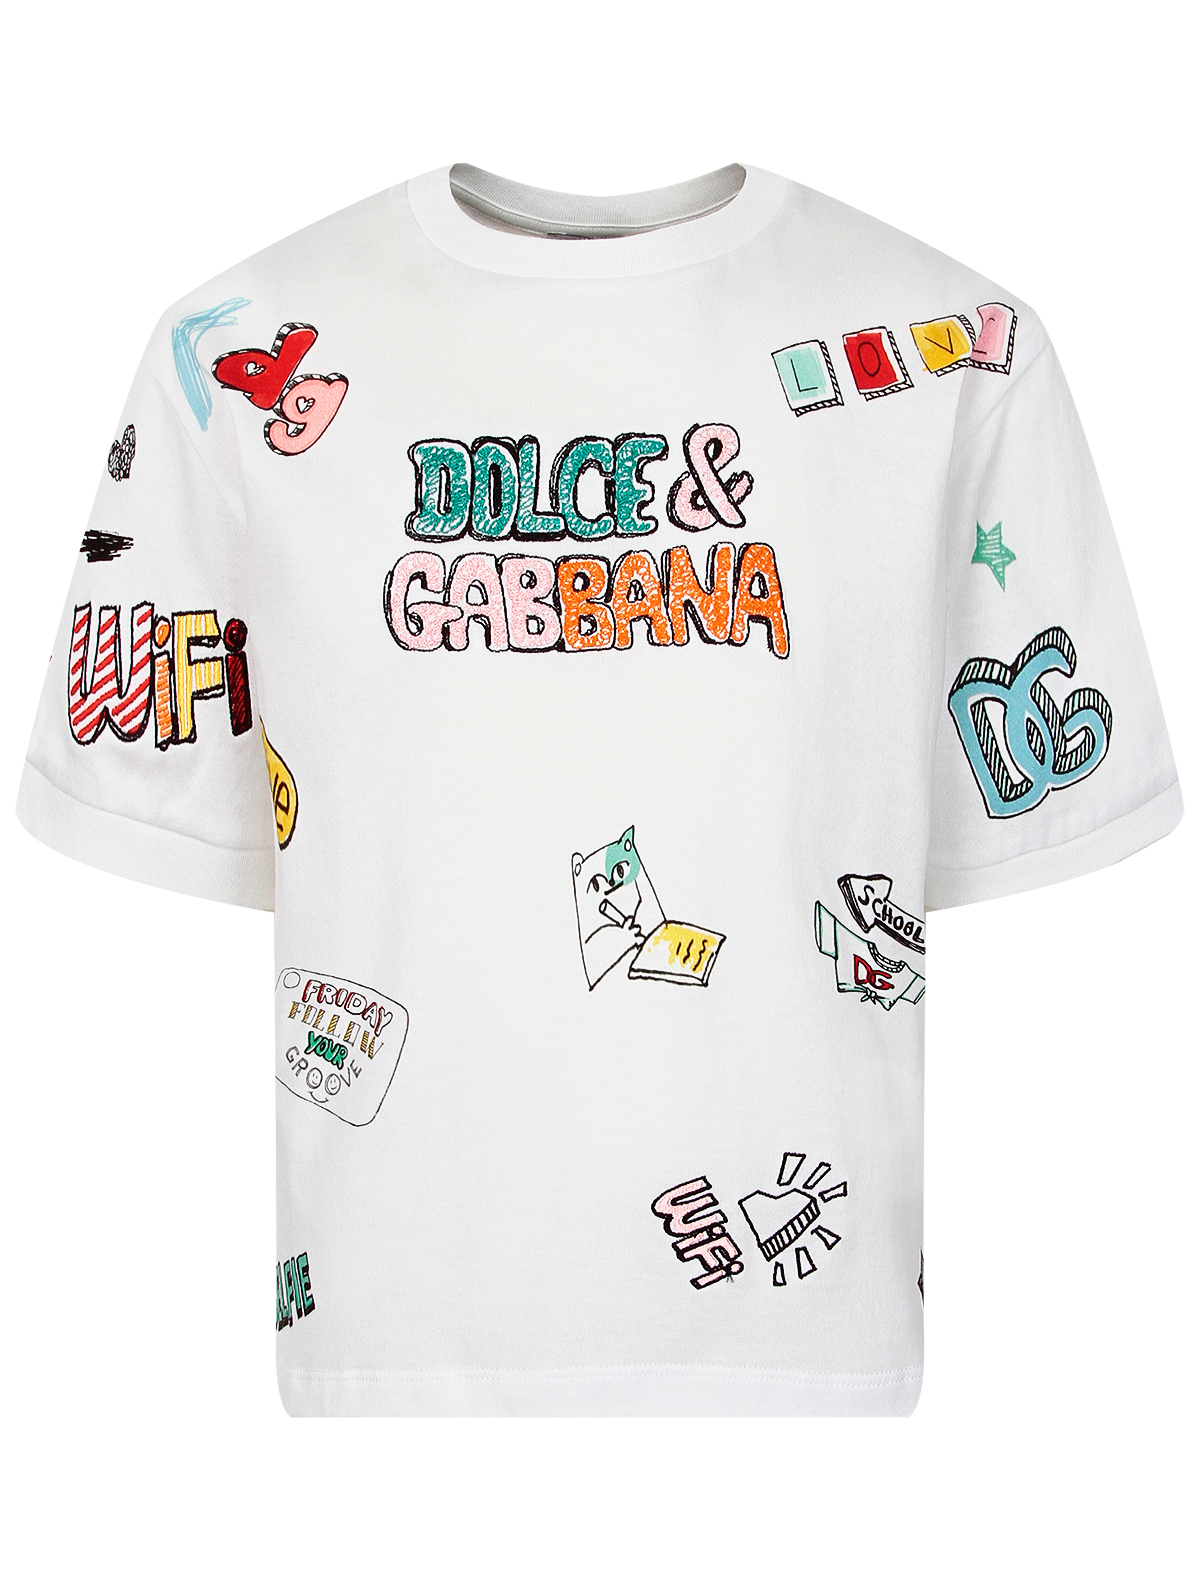 Футболка Dolce & Gabbana футболка со сплошным разноцветным лого dolce